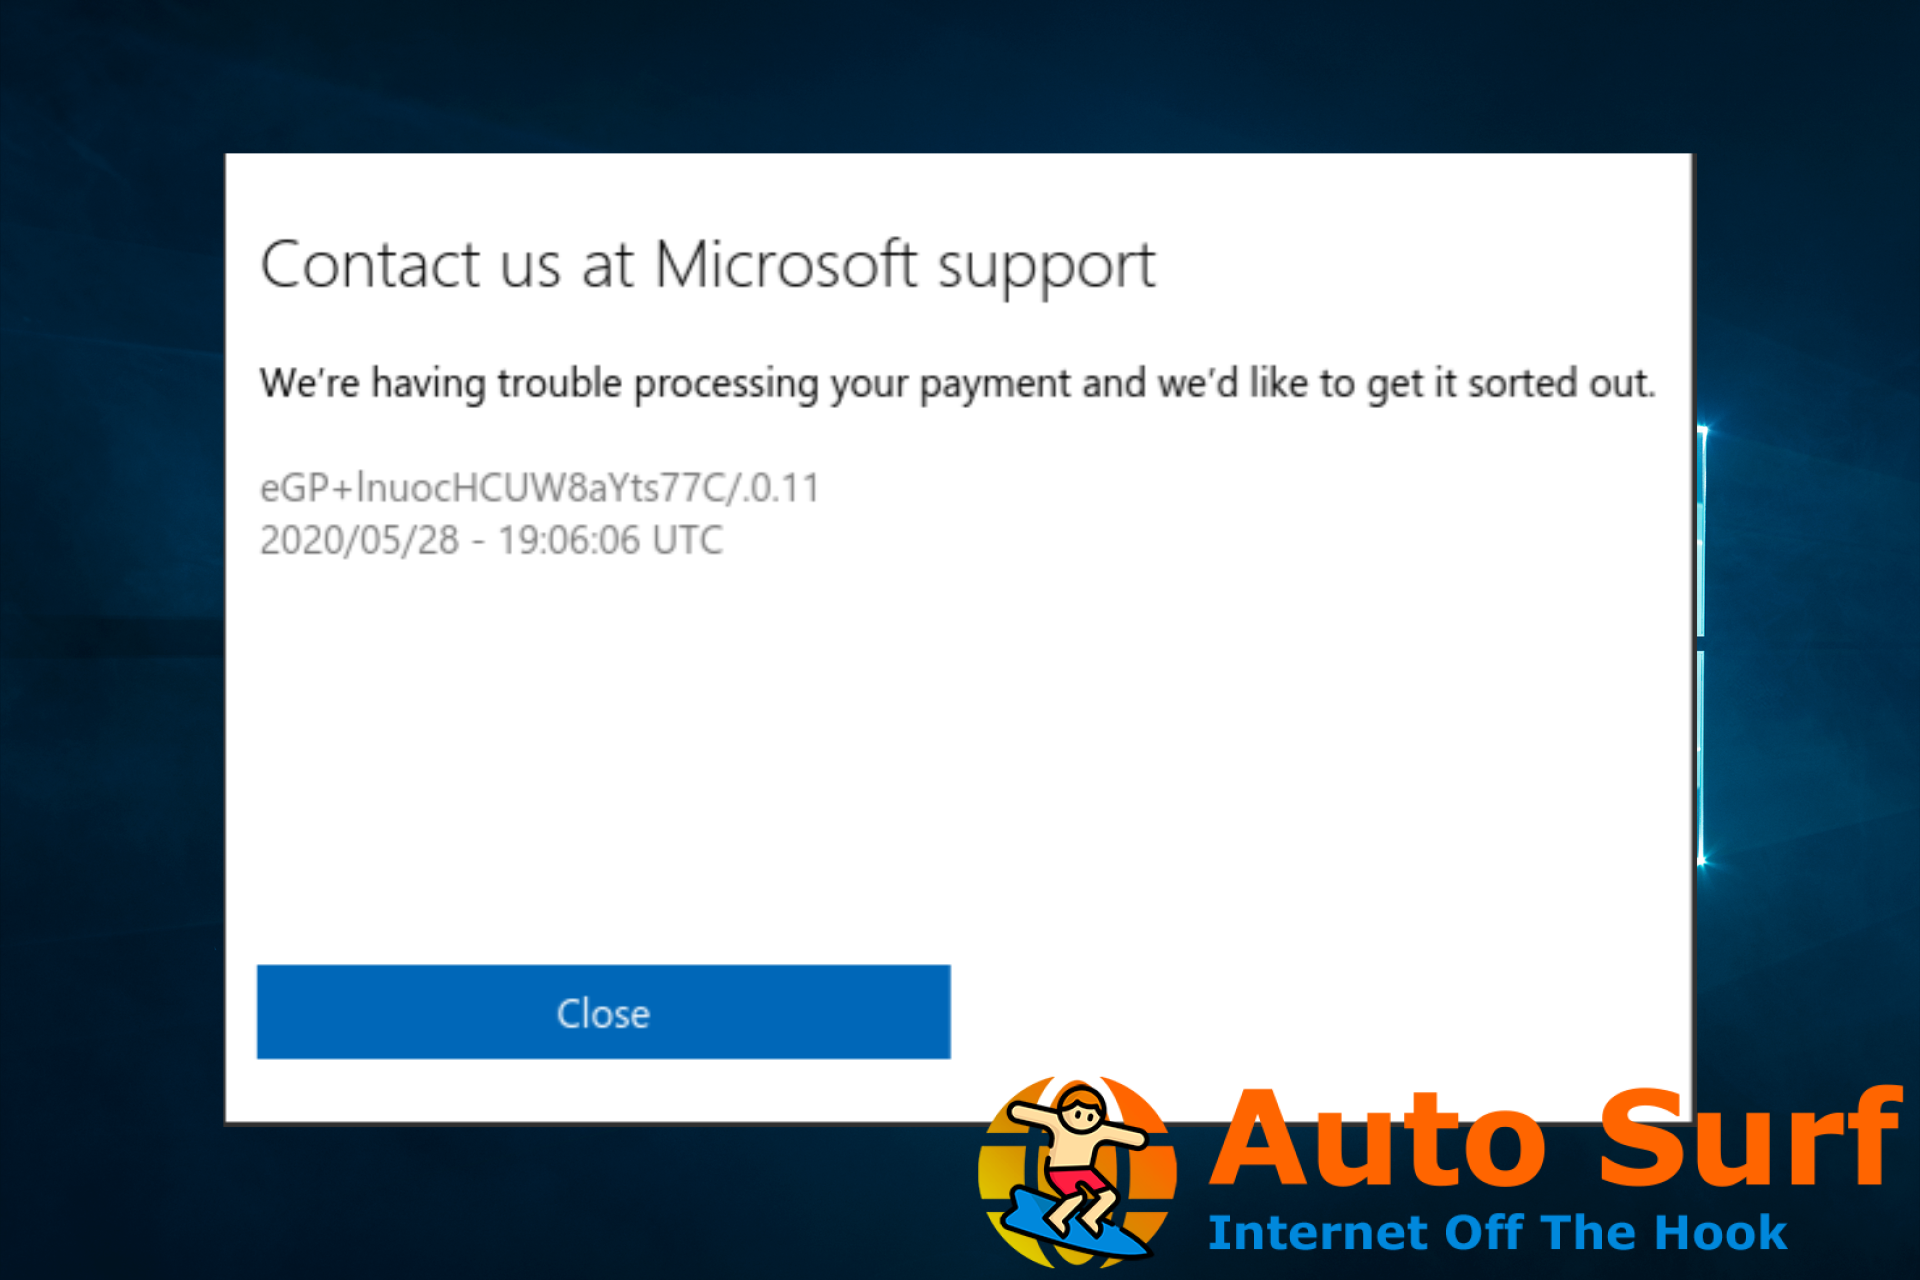 Microsoft tenemos problemas para procesar su pago: solución